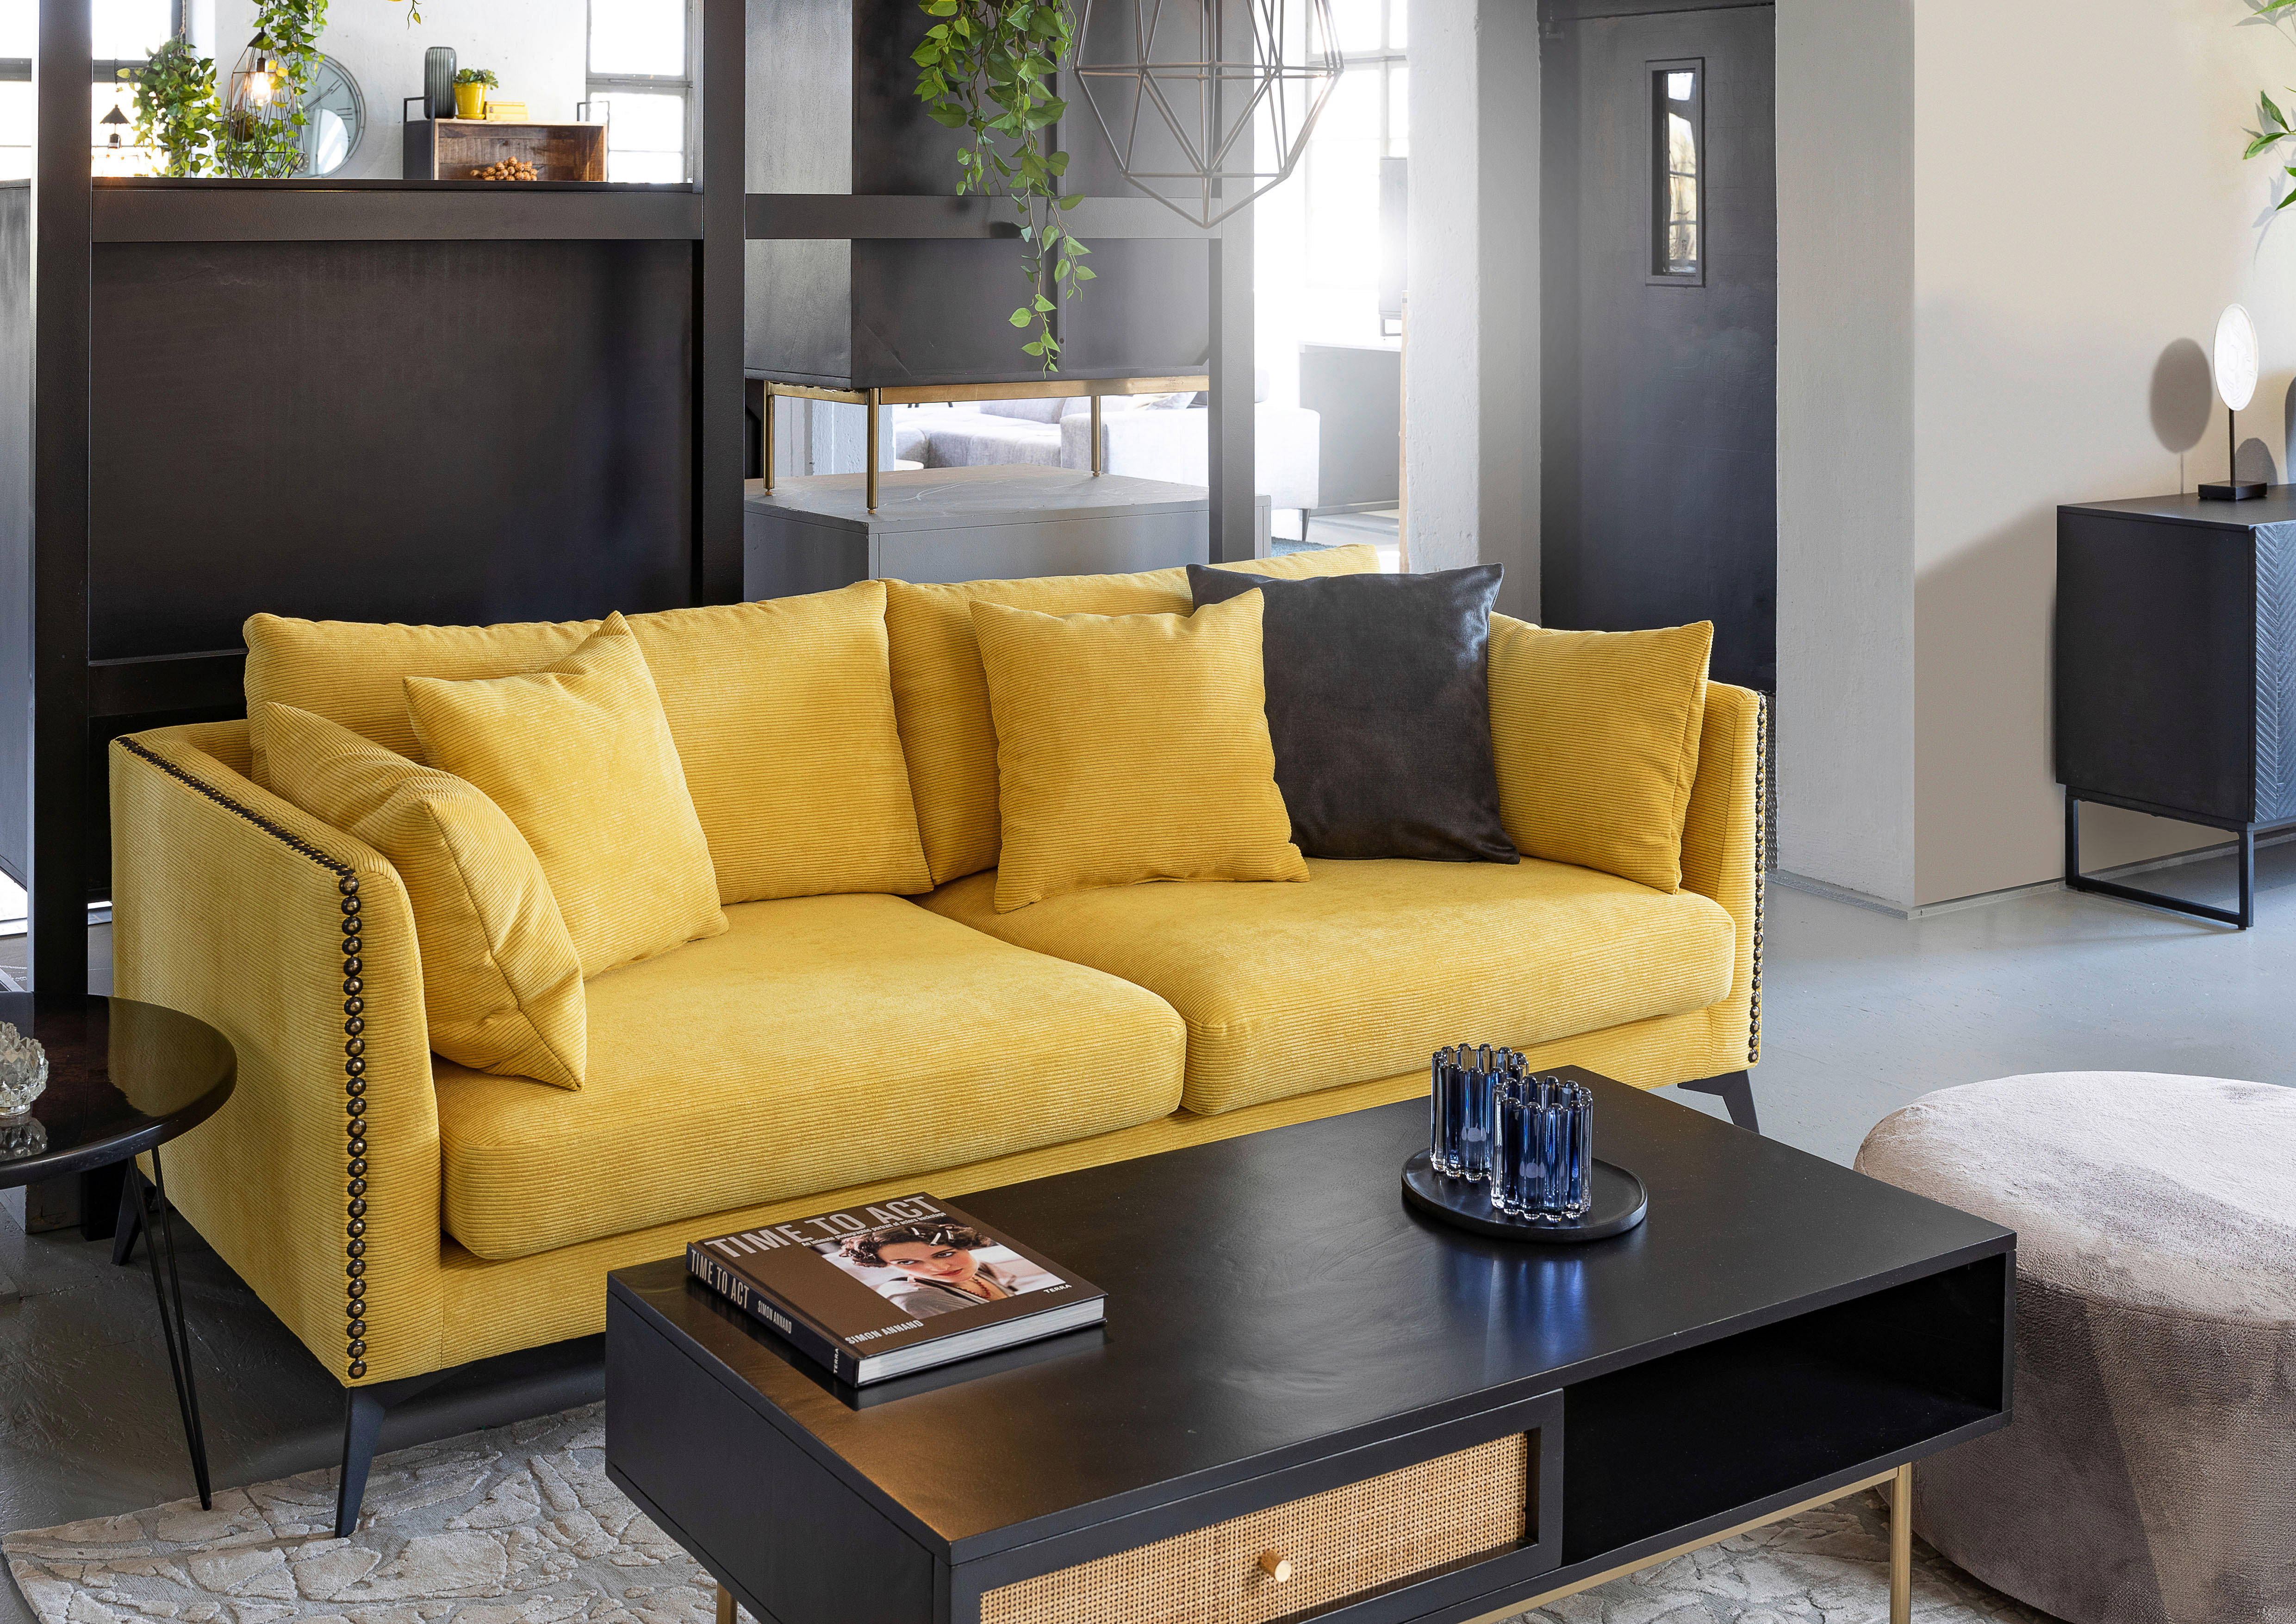 POHOVKA, textil, žlutá - černá/žlutá, Design, kov/textil (210/70/100cm) - Ambia Home